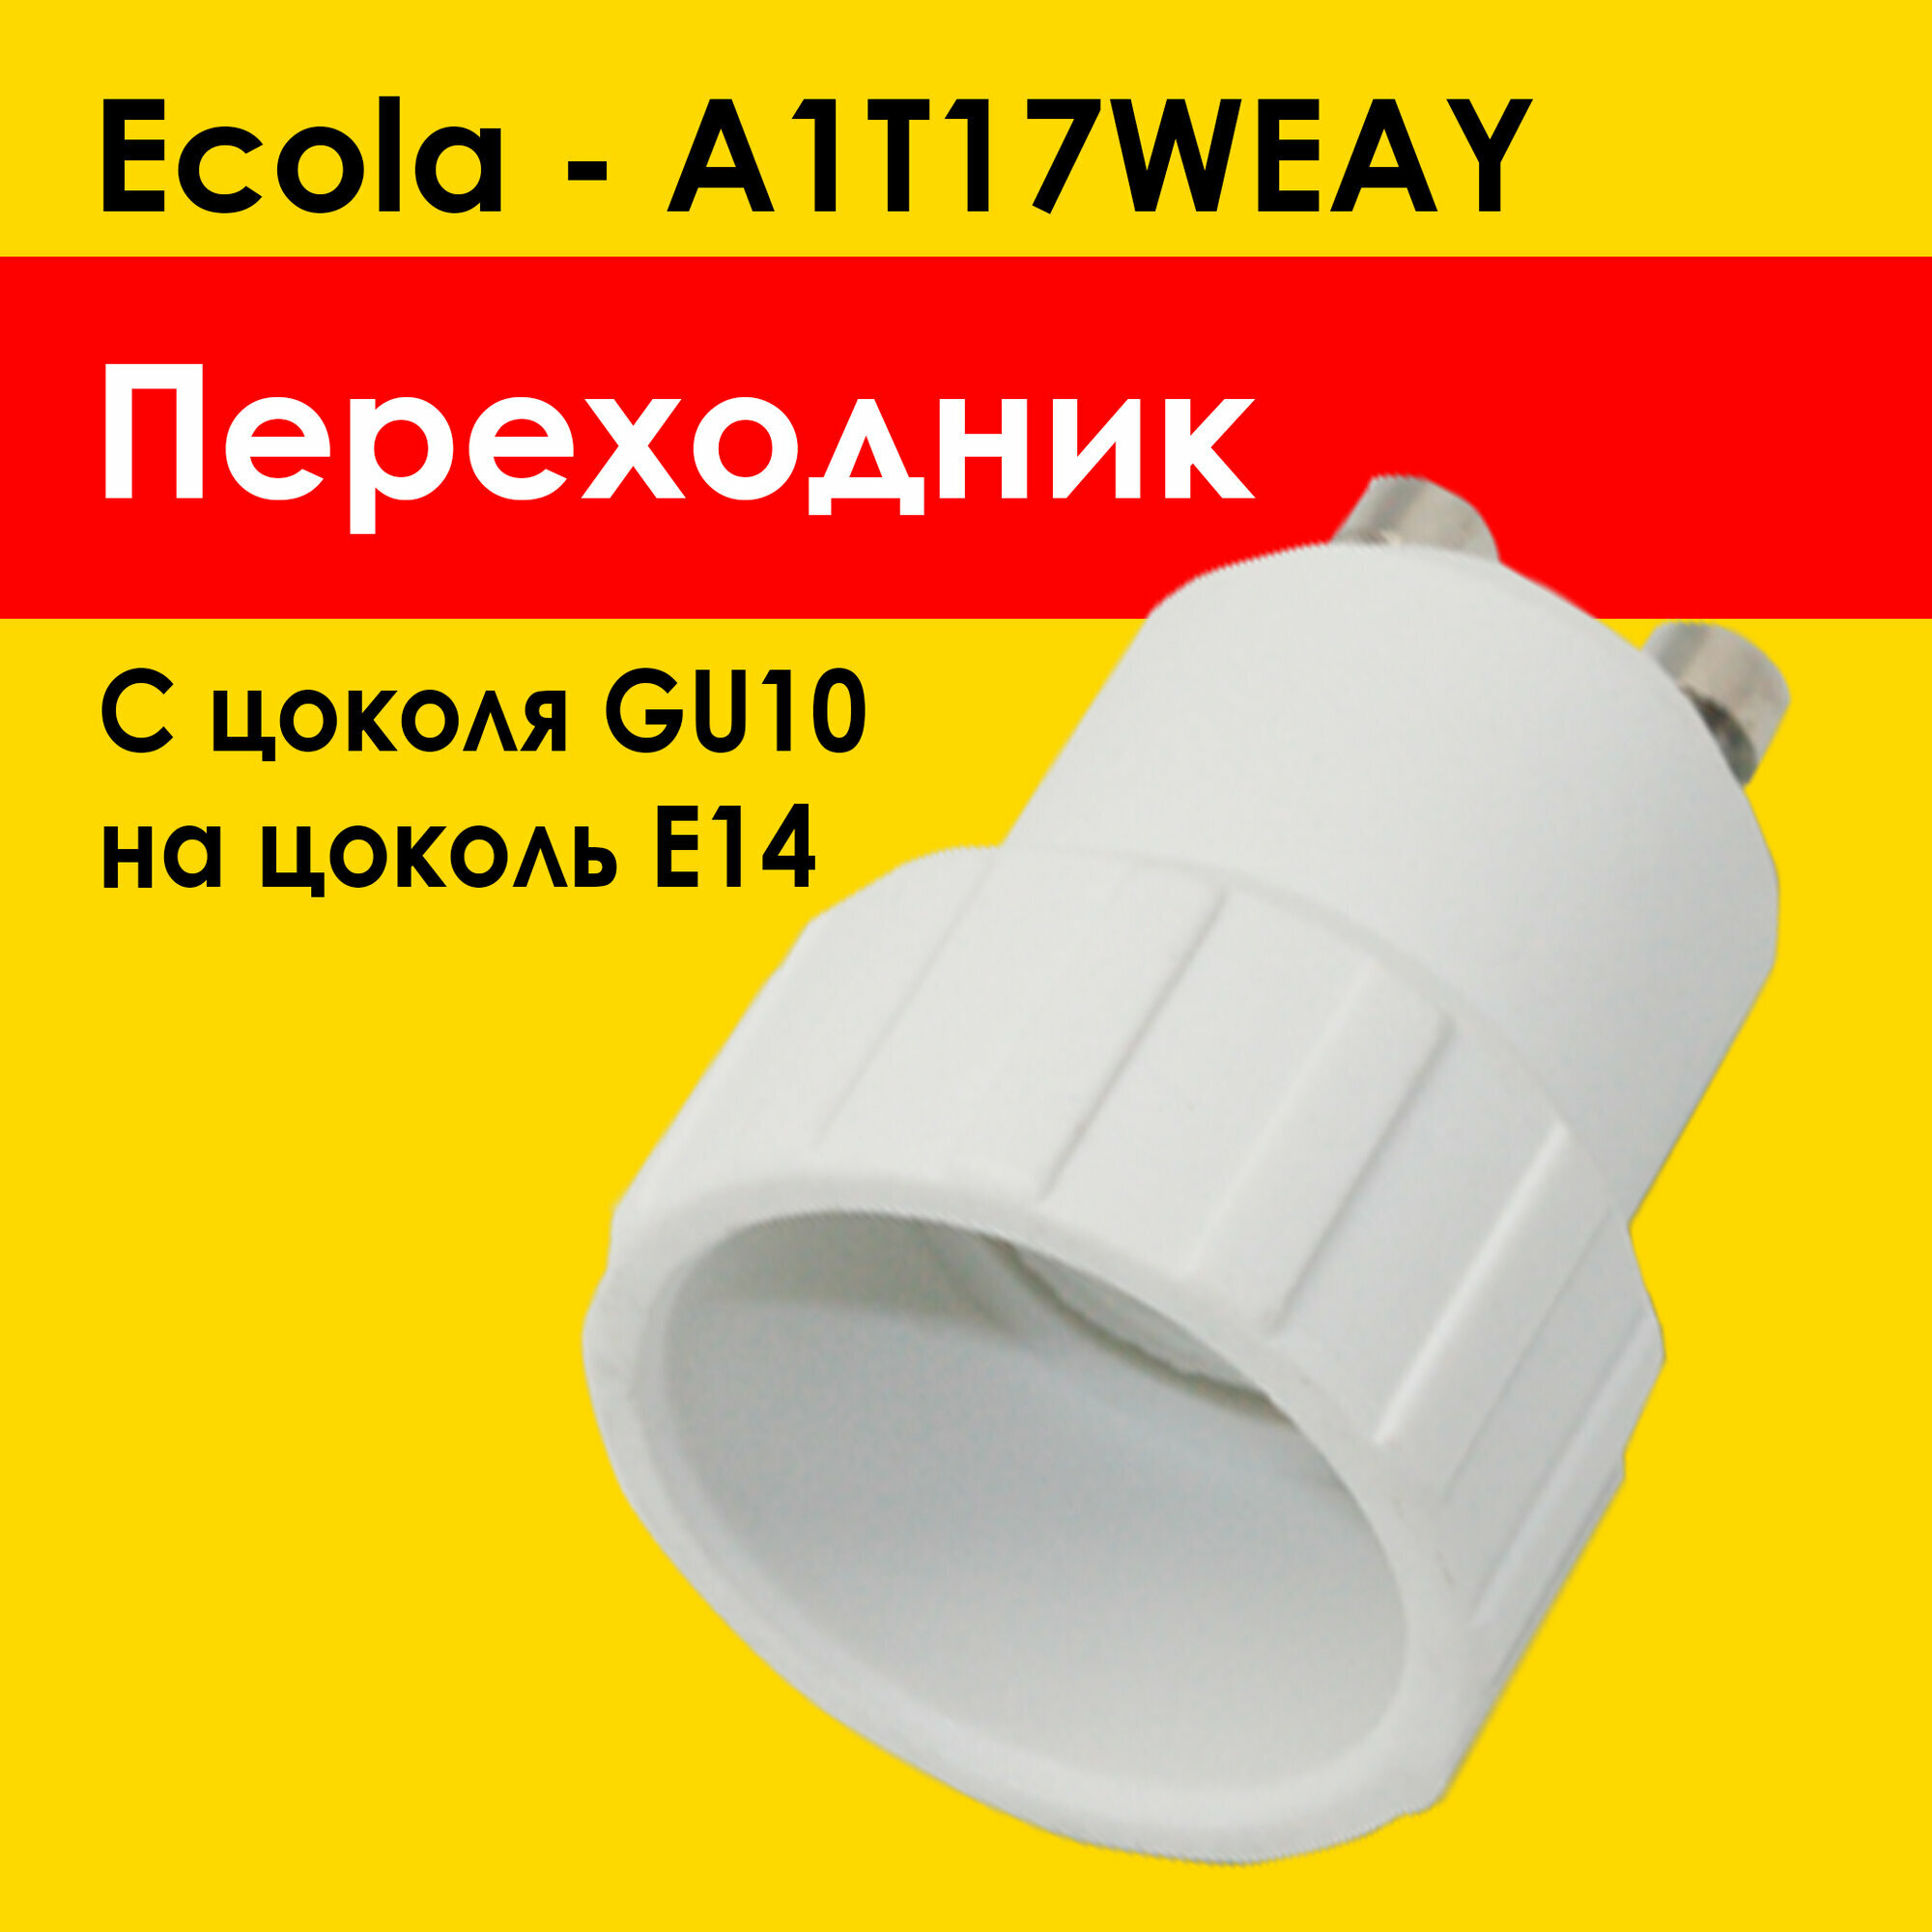 Ecola переходник GU10 на E14 для лампочки e14 под цоколь gu10 (A1T17WEAY) патрон белый